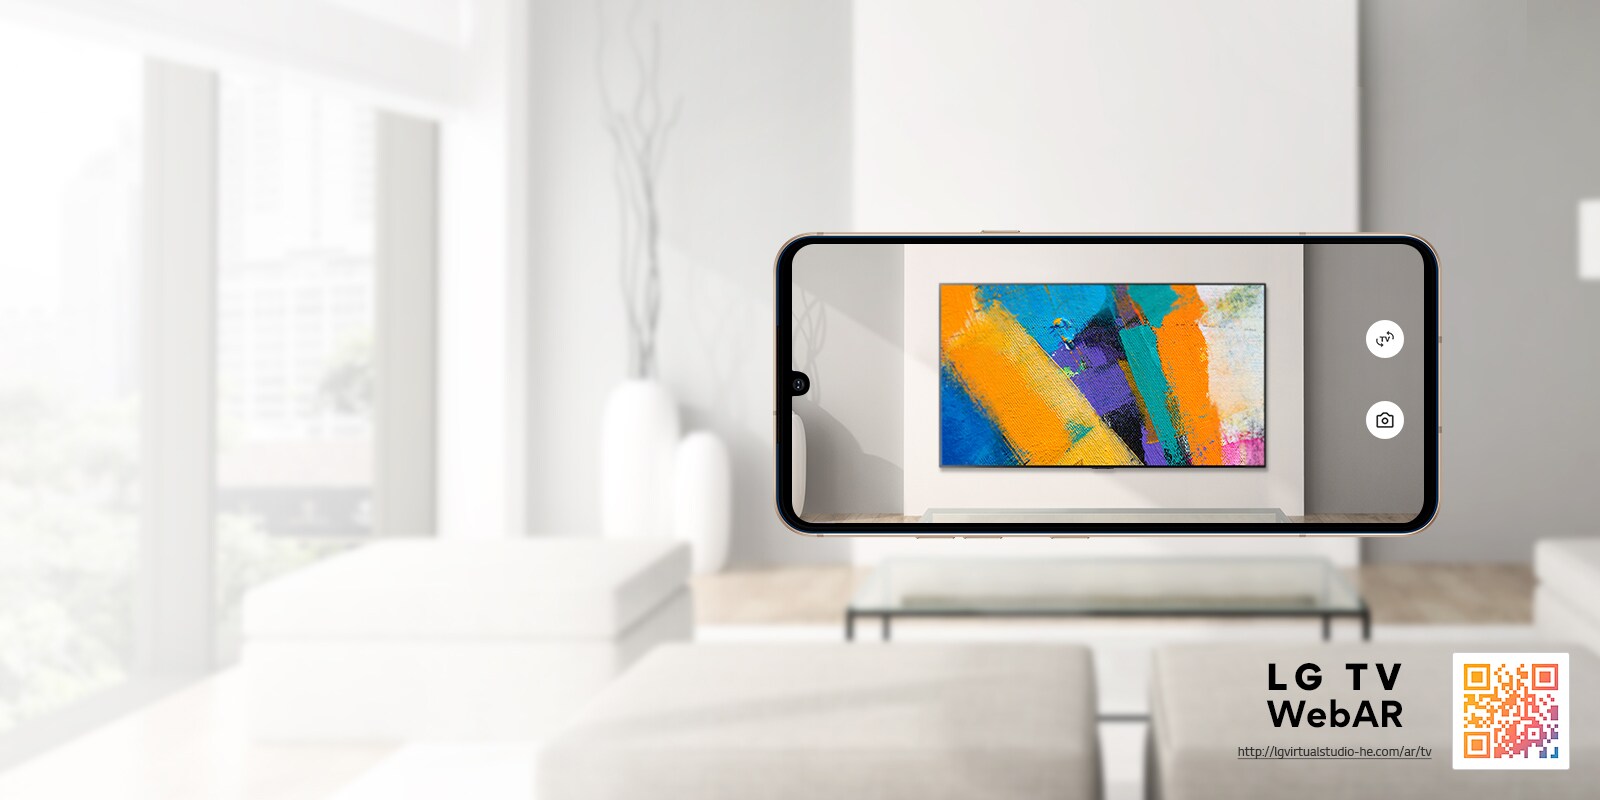 Это AR Web -симуляционные изображения LG OLED TV. Изображения мобильного телефона перекрываются в минималистском пространстве. Есть QR -код в нижней части справа